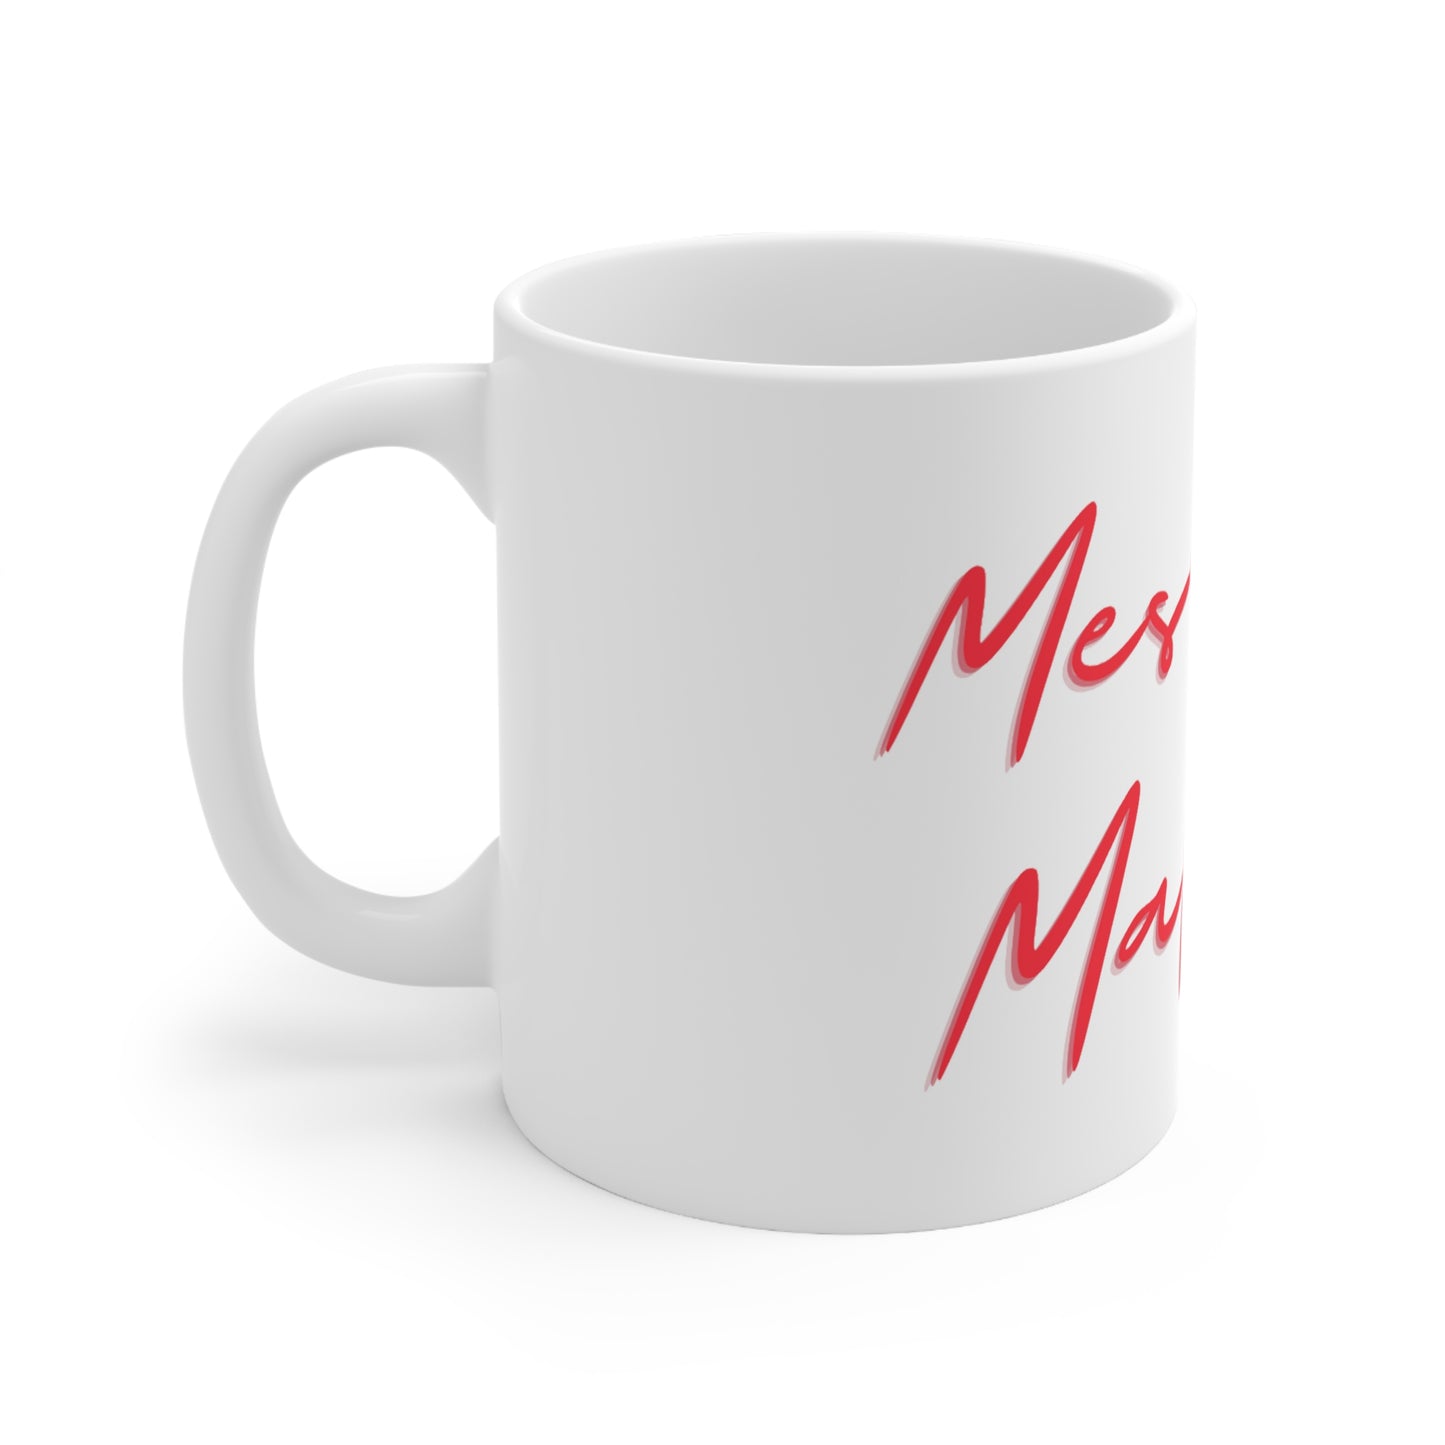 "The Namesake" Messina Mafia Ceramic Mug 11oz